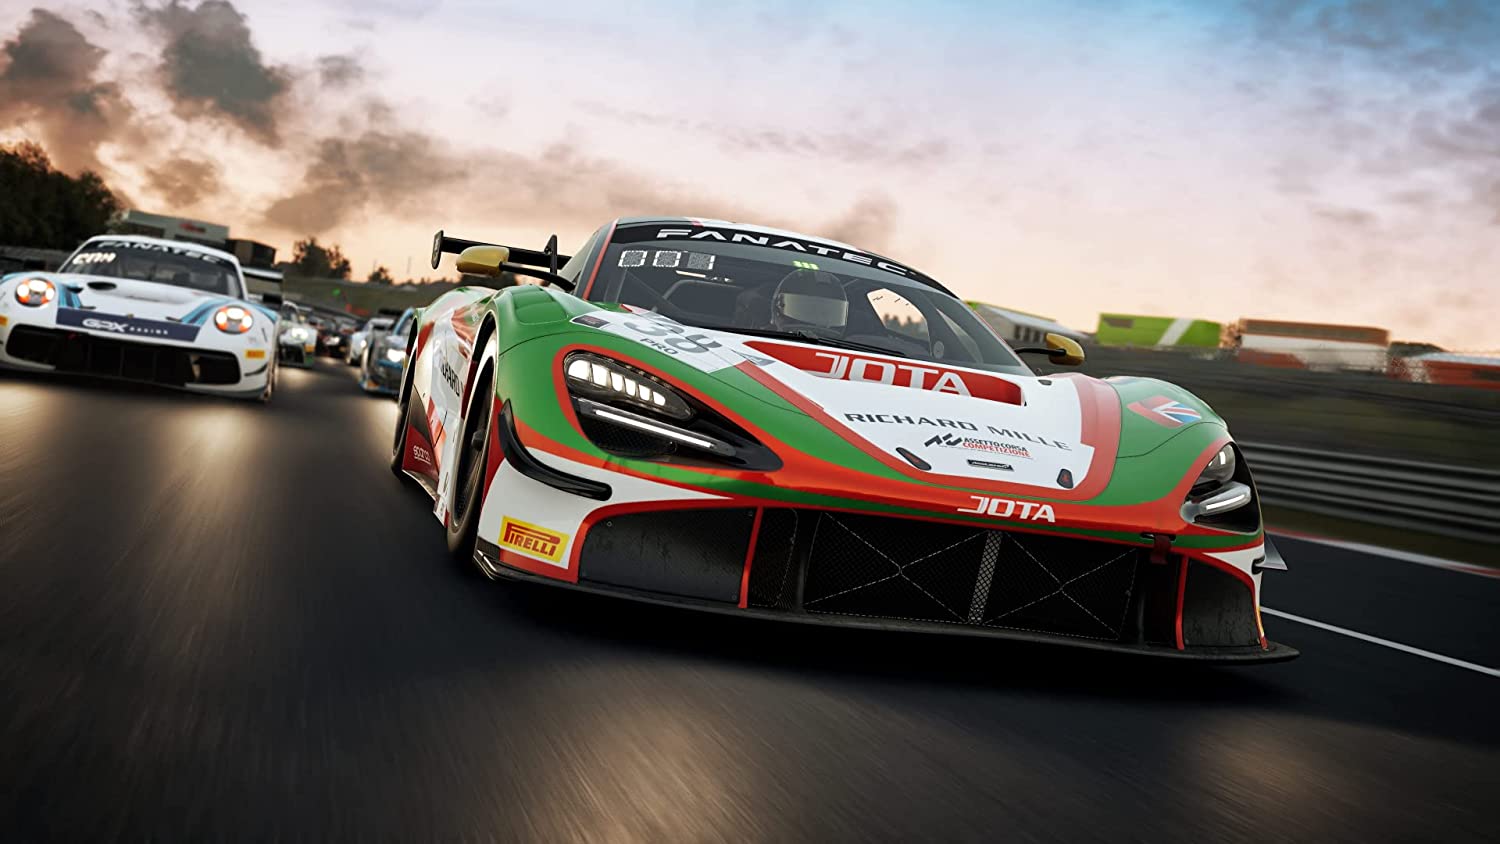 Assetto Corsa Competizione - Xbox One